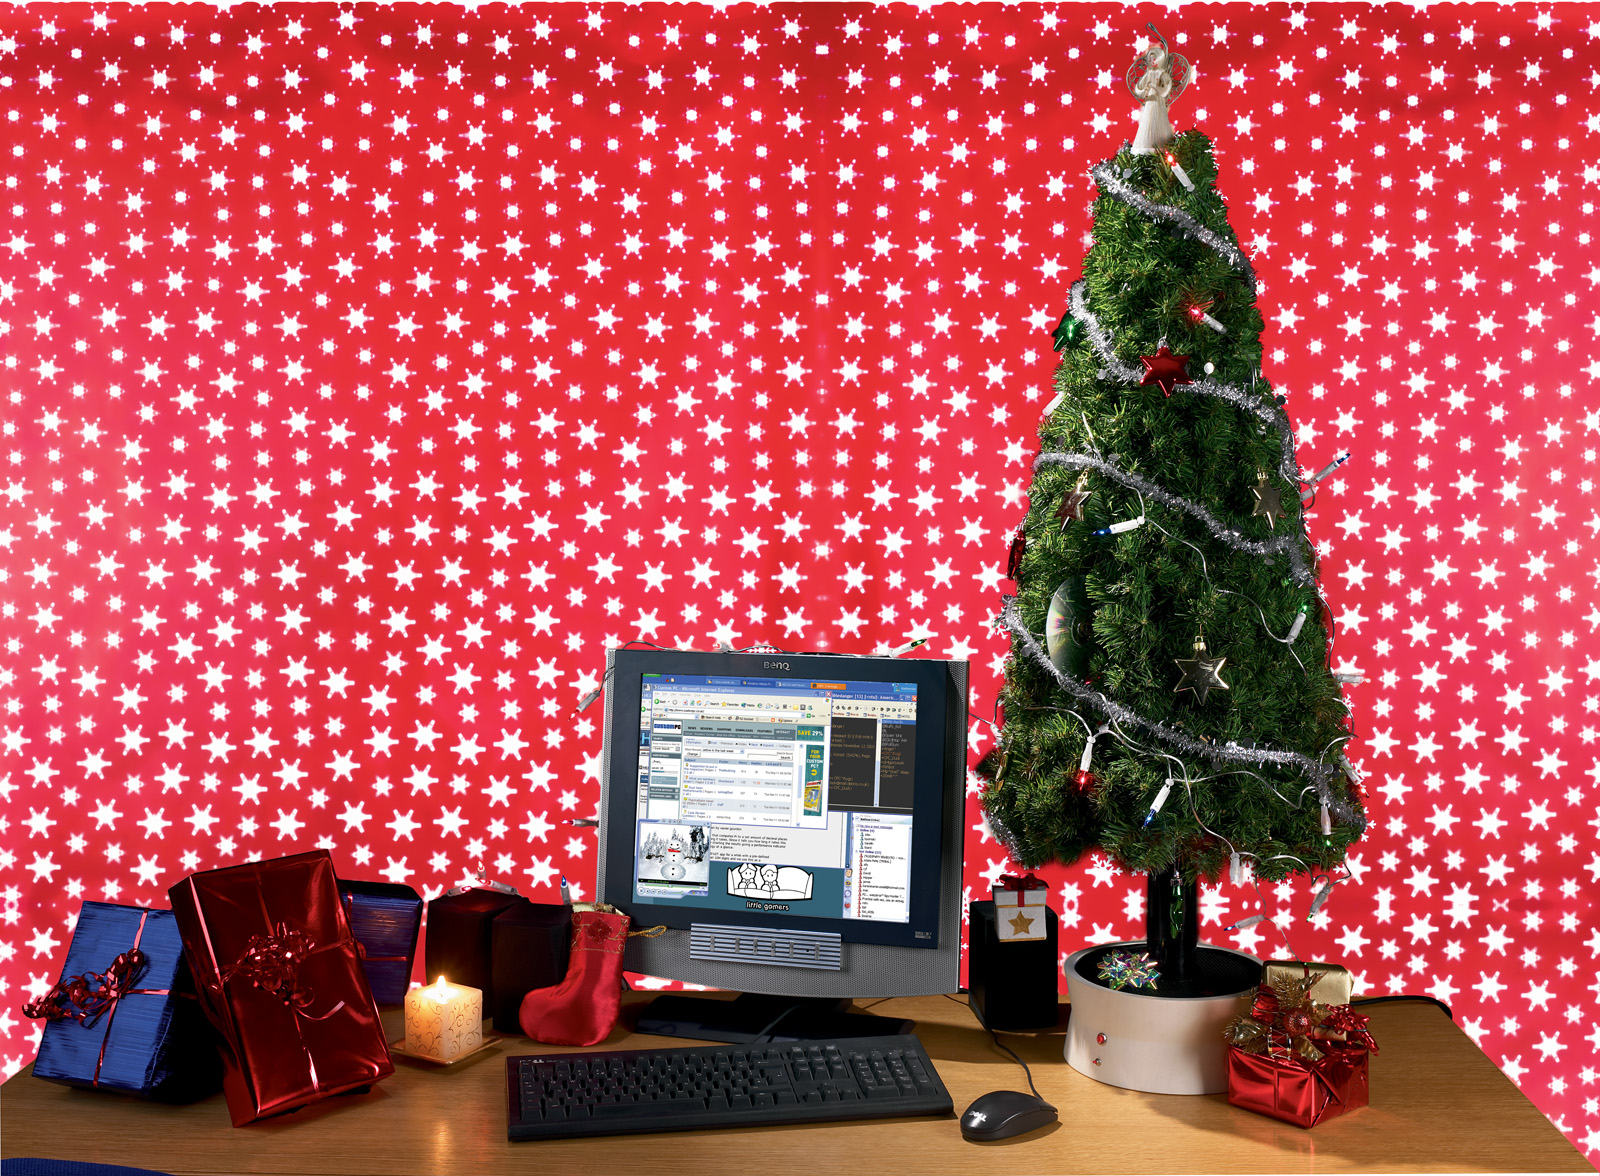 A PC in a Christmas Tree | bit-tech.net